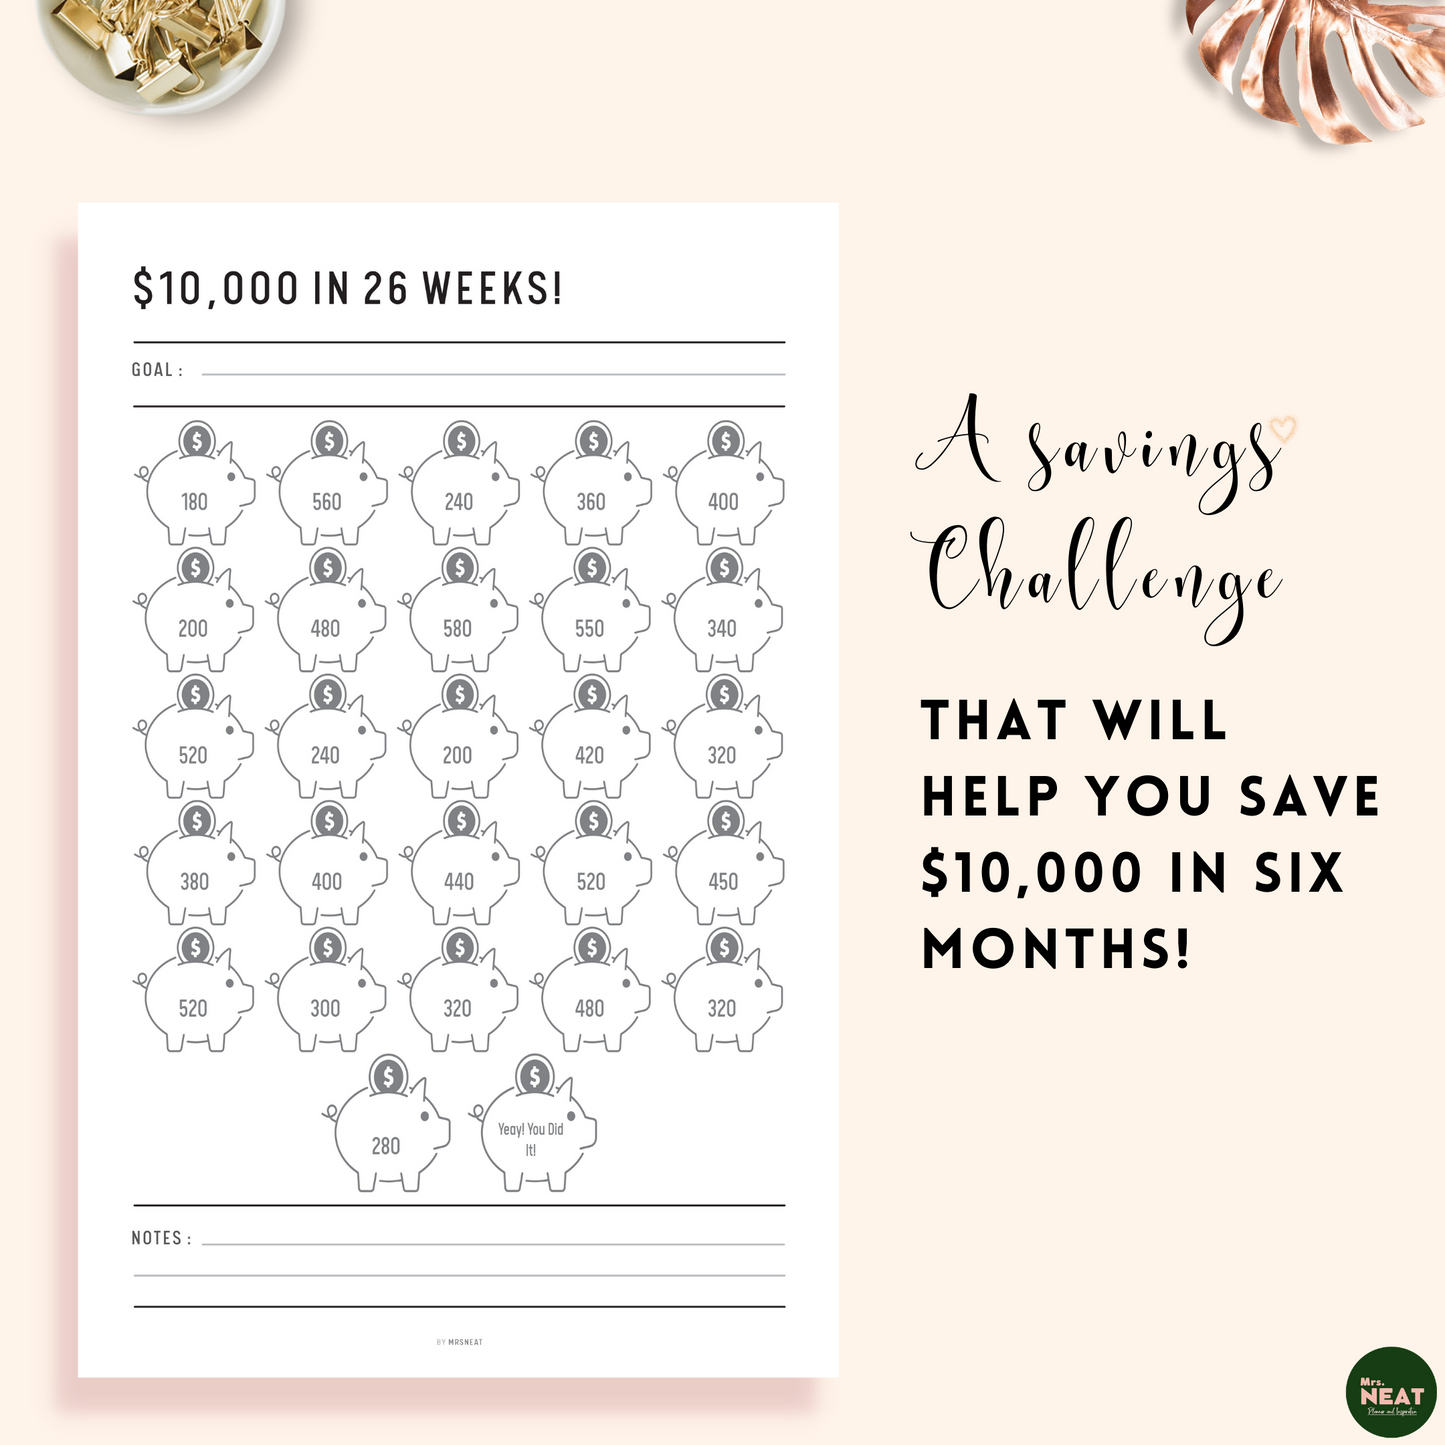 Floral $10,000 Savings Challenge in 26 Weeks